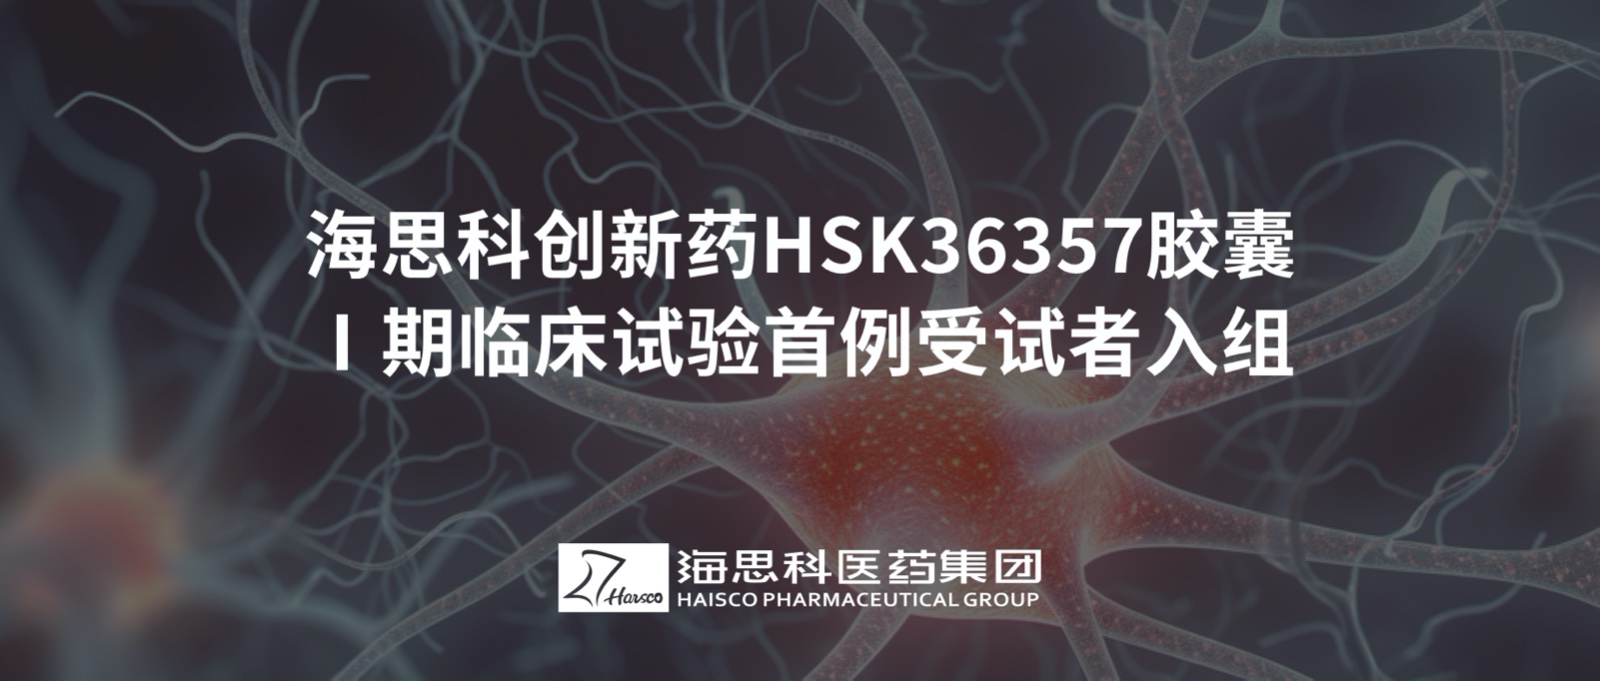 乐虎唯一官网创新药HSK36357胶囊Ⅰ期临床试验首例受试者入组